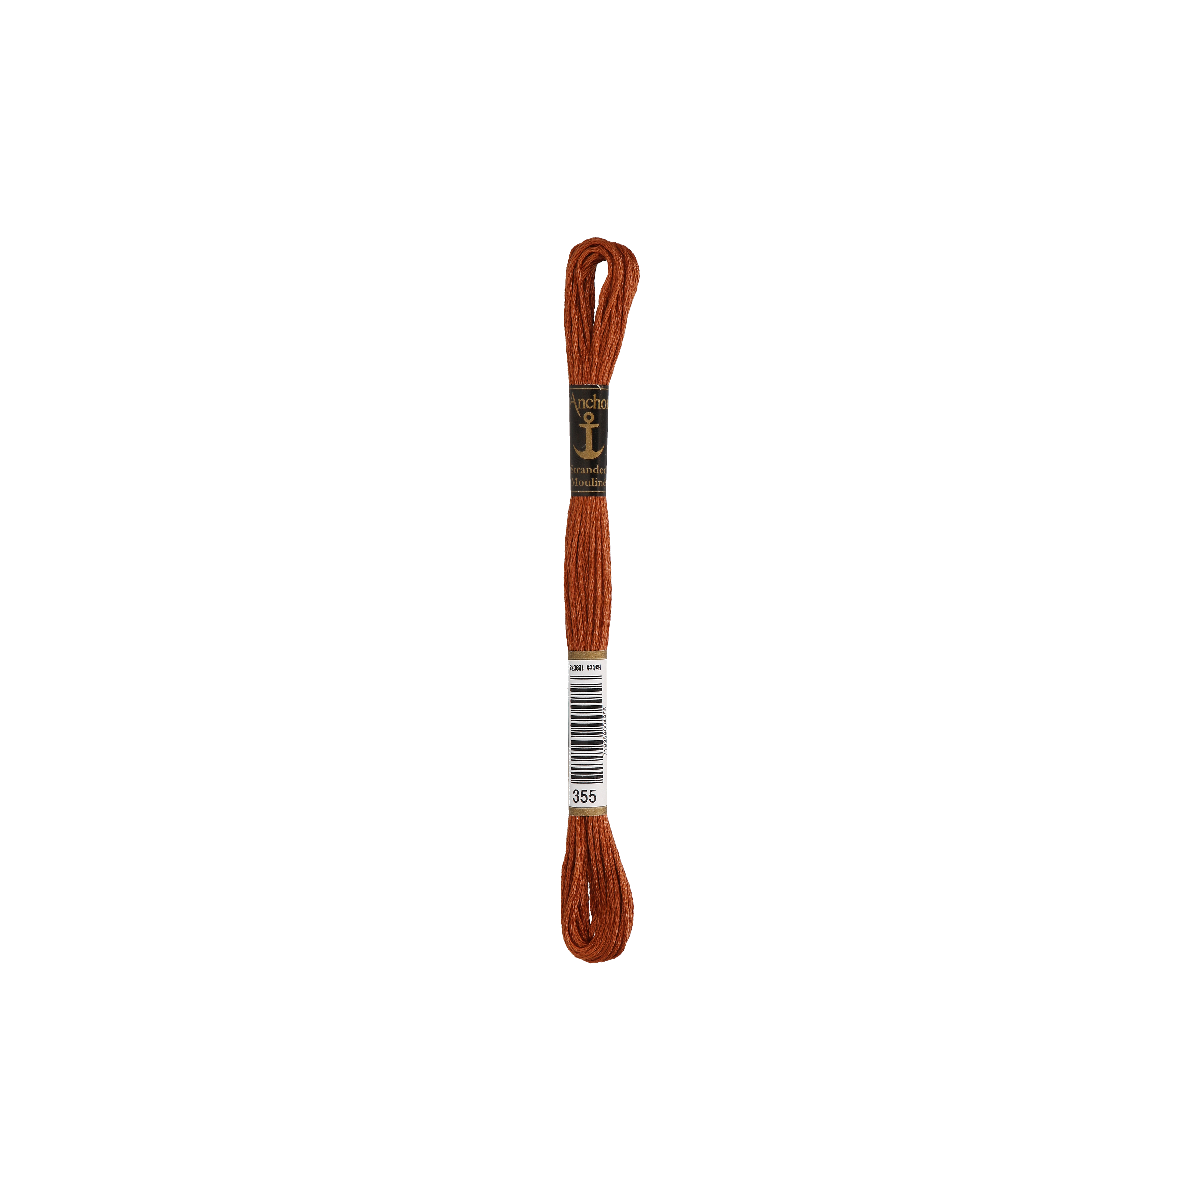 Anchor Sticktwist 8m, marrone fulvo, cotone, colore 355,...